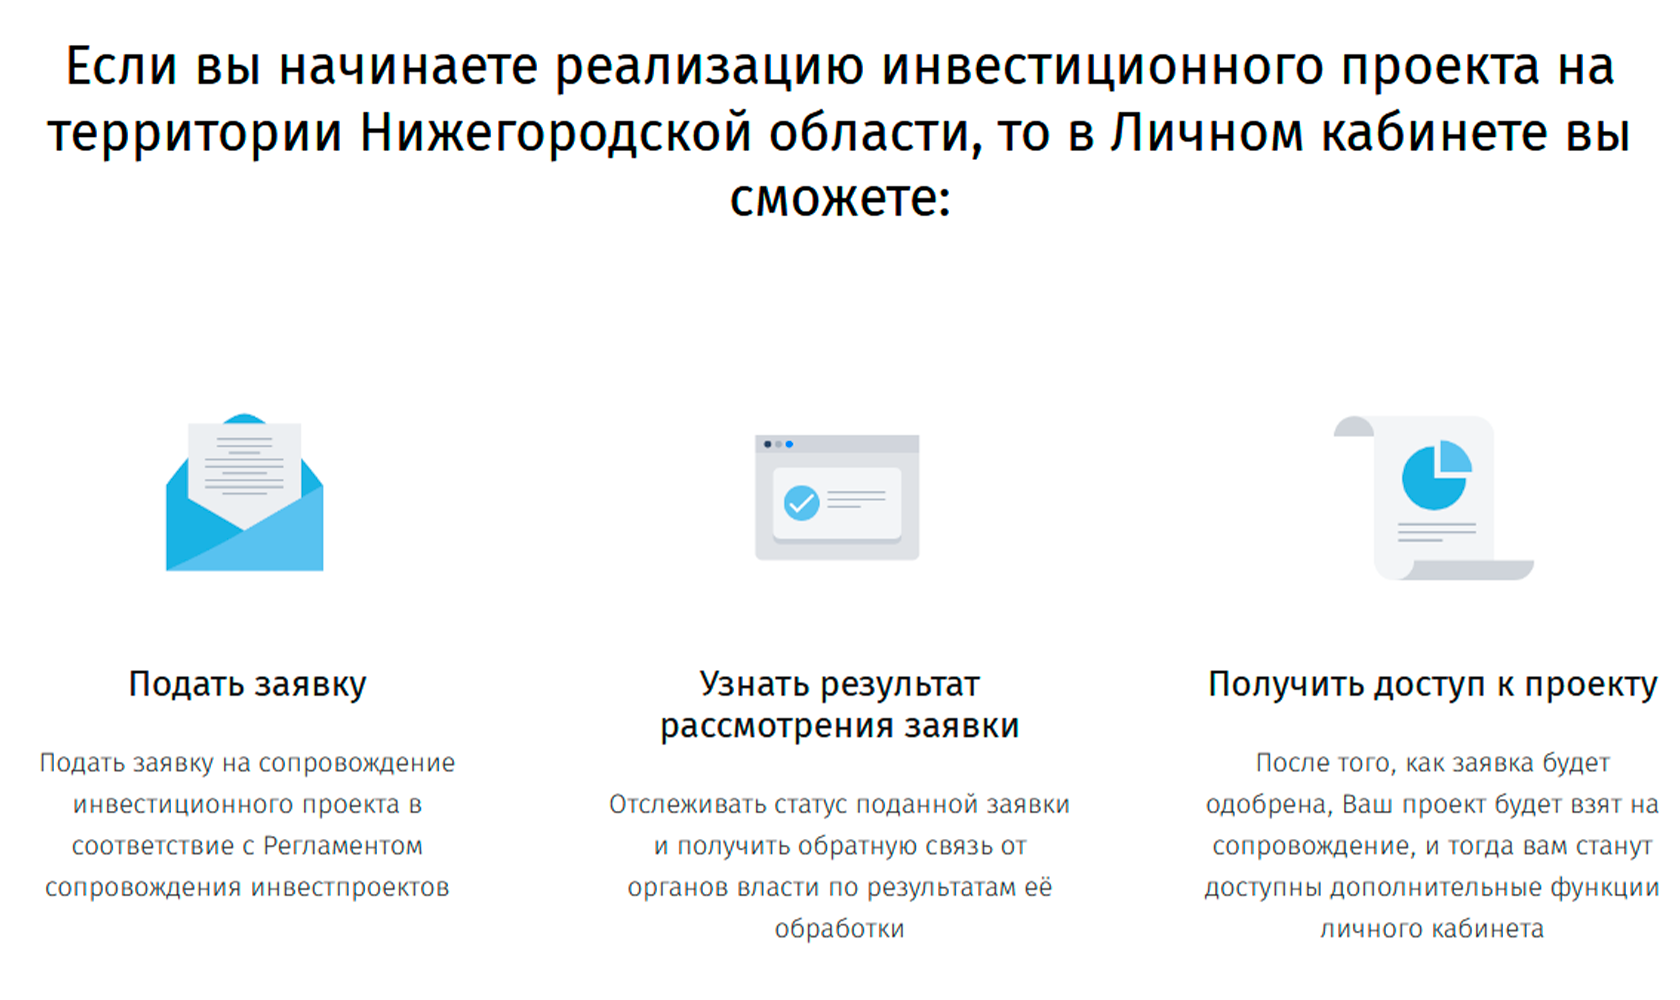 Сайты, о которых должен знать каждый житель Нижегородской области